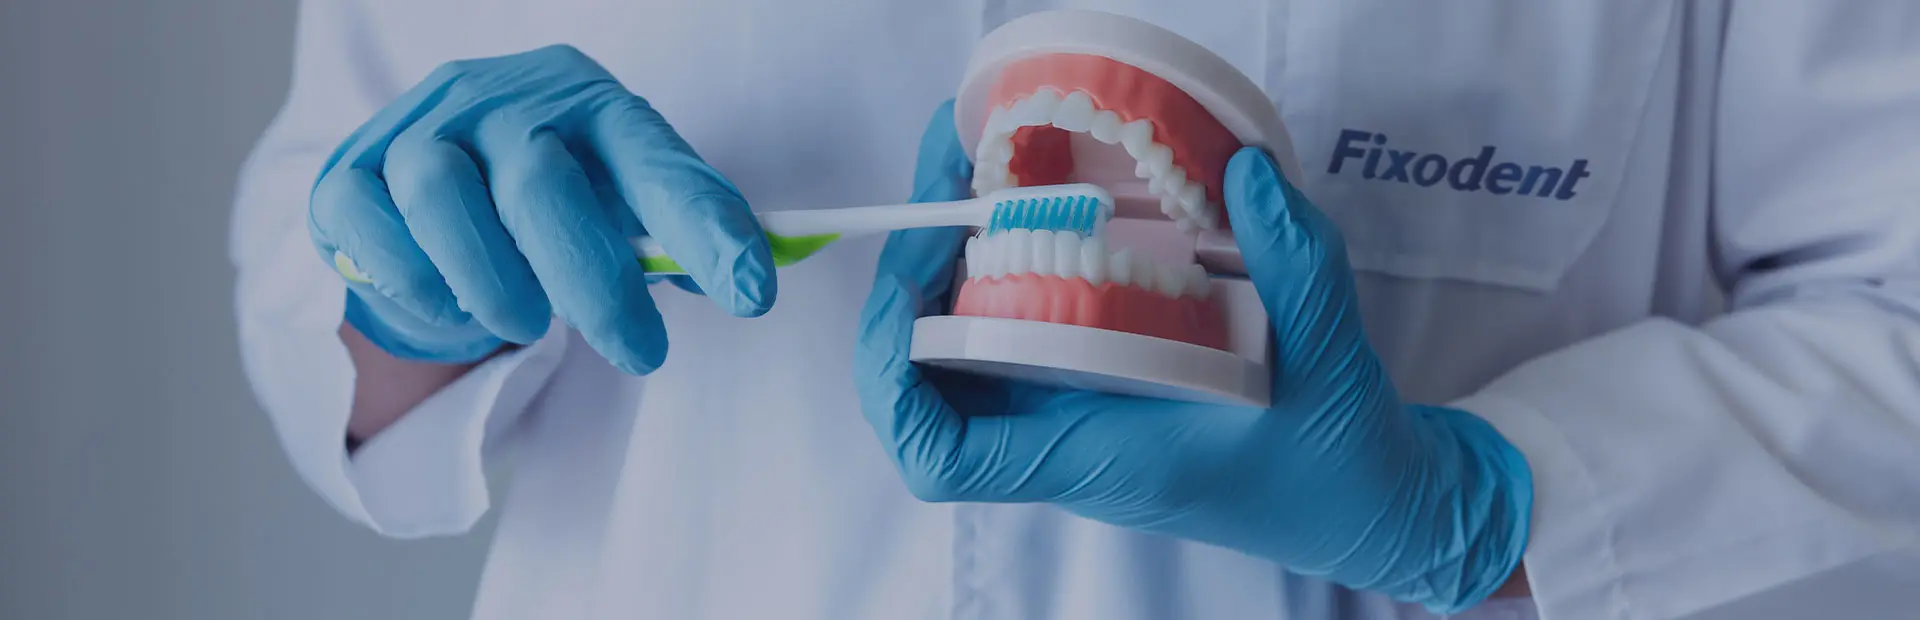 Un technicien dentaire tient dans ses mains une prothèse dentaire amovible et explique avec quels matériaux elles sont faites.